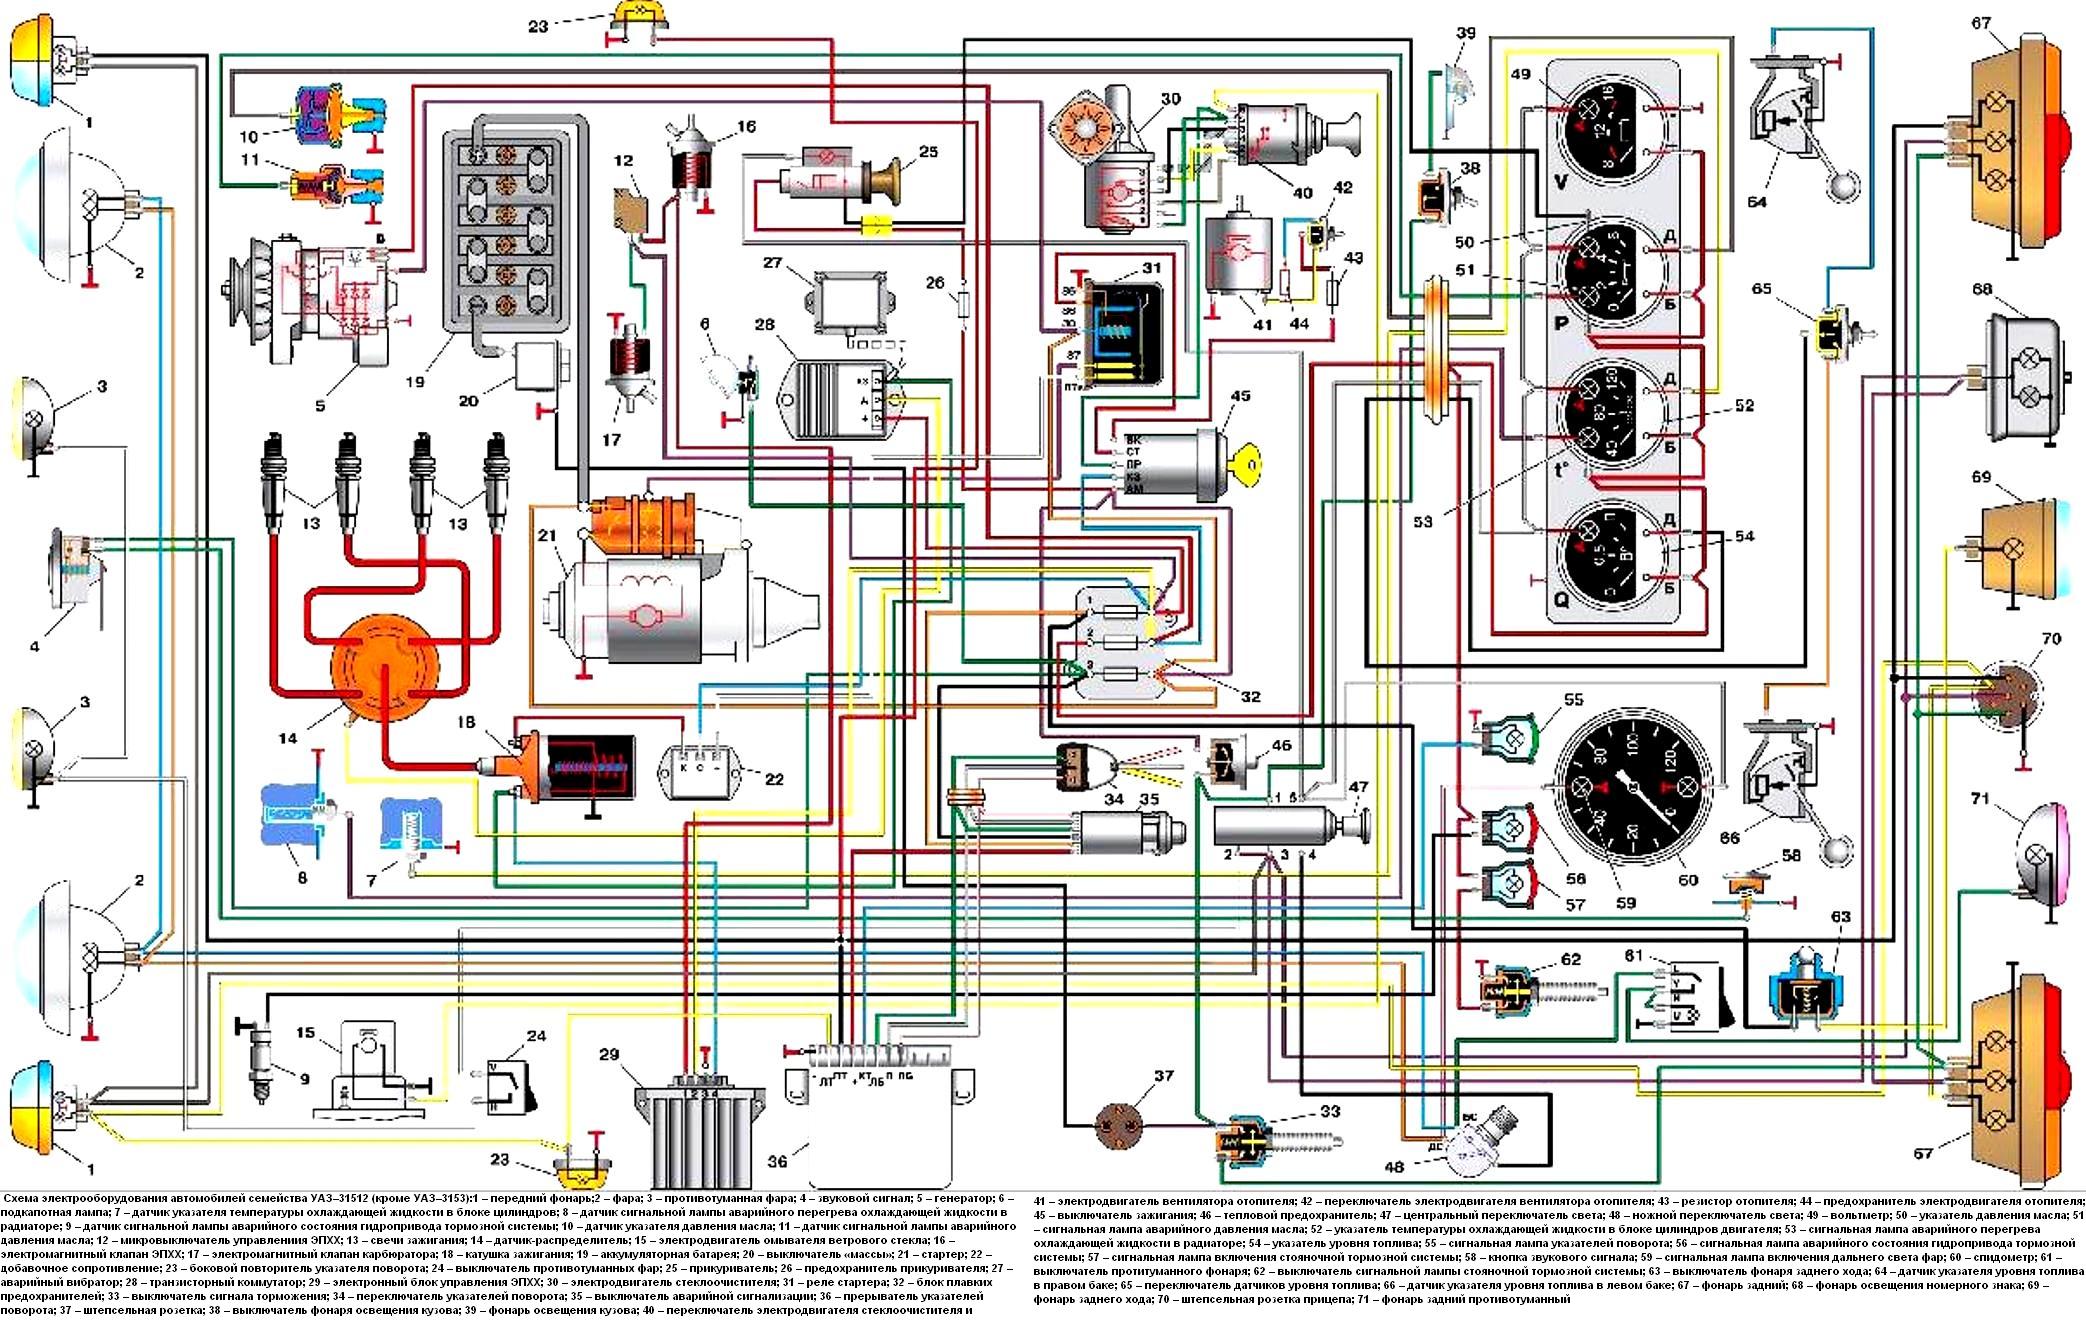 Схема электрооборудования автомобилей семейства УАЗ–31512 (кроме УАЗ–3153):